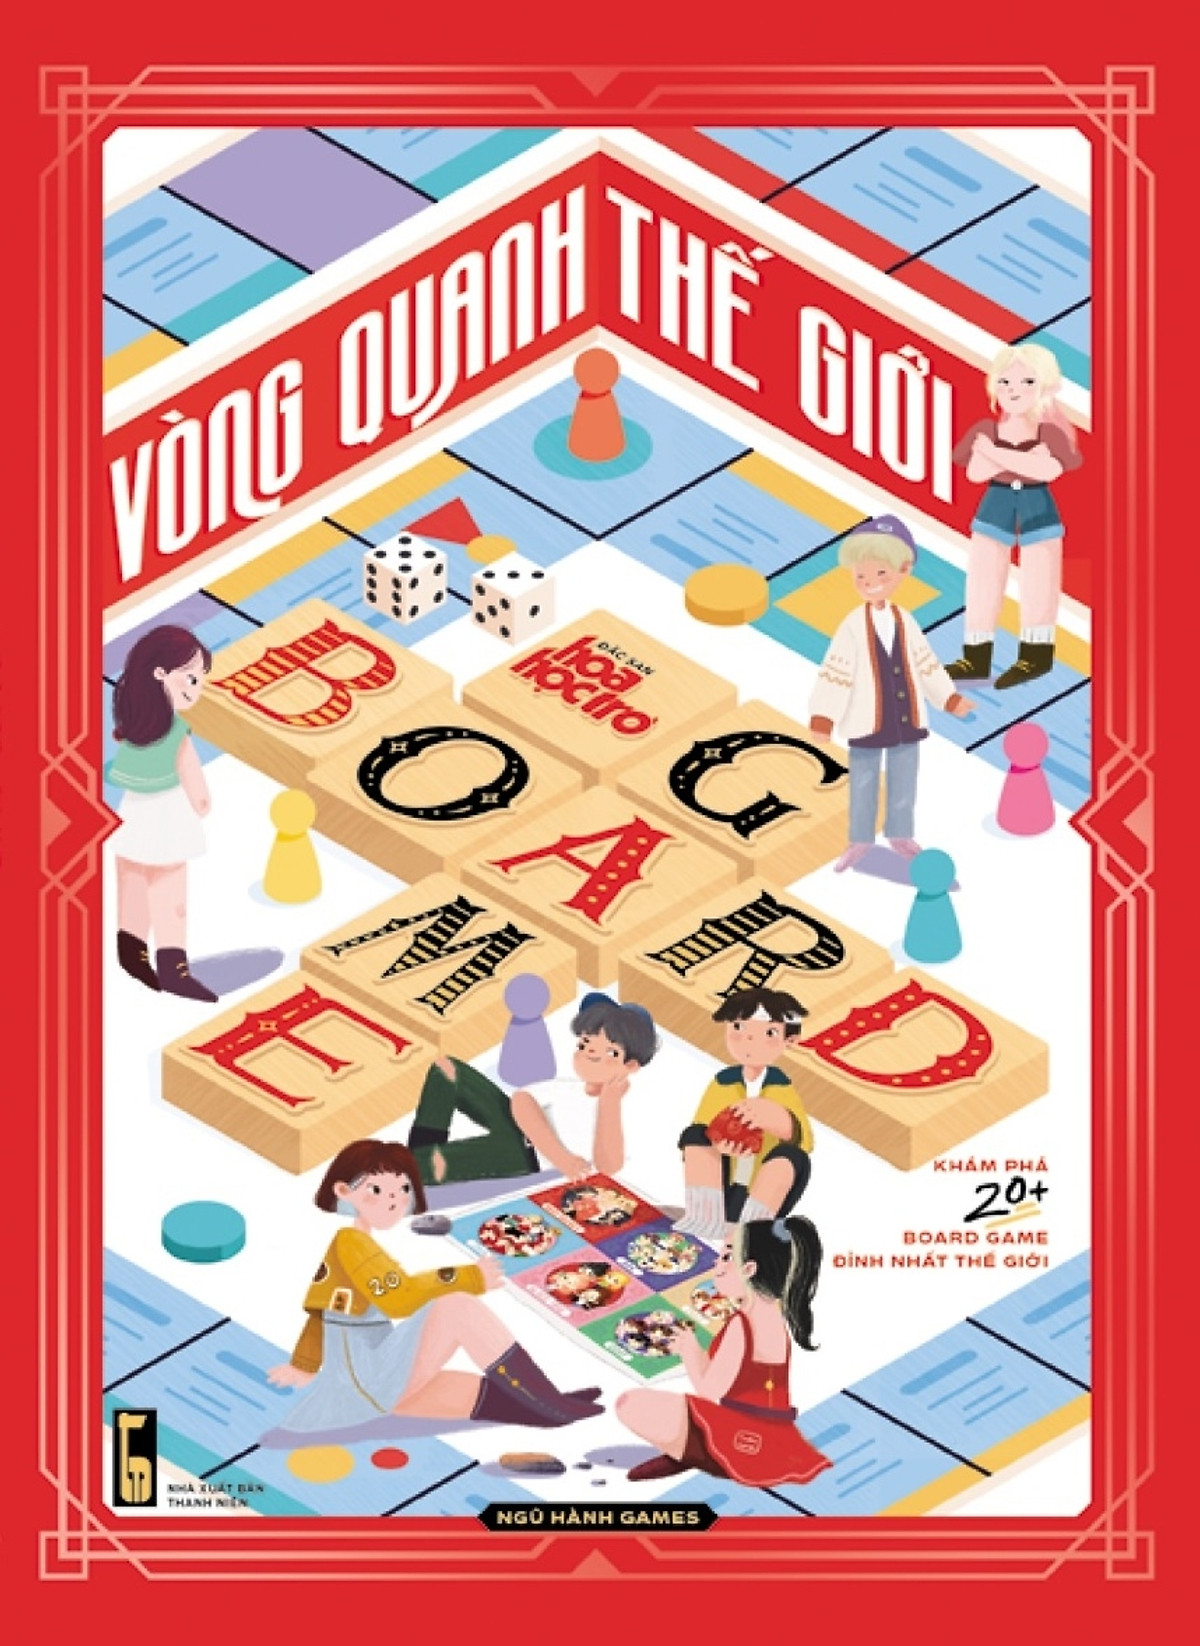 Vòng Quanh Thế Giới Board Game - Sách Độc Quyền Fahasa - Tặng Kèm Poster 40x60cm Idol Game + Game Vòng Quanh Thế Giới + 01 Tờ Hướng Dẫn Cắt, Gấp Xí Ngầu In Màu